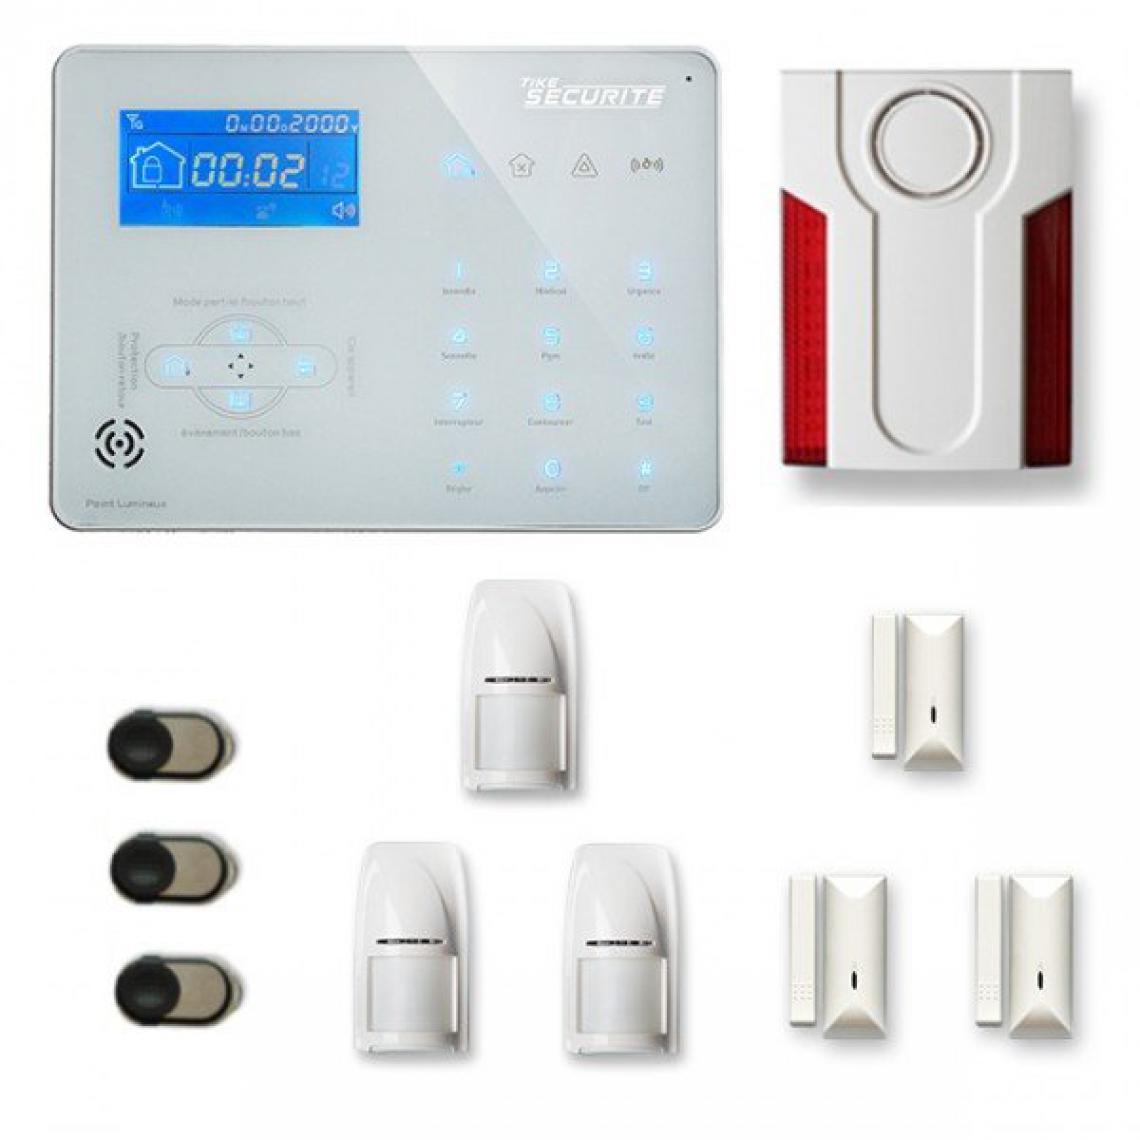 Tike Securite - Alarme maison sans fil ICE-B28 Compatible Box internet - Alarme connectée